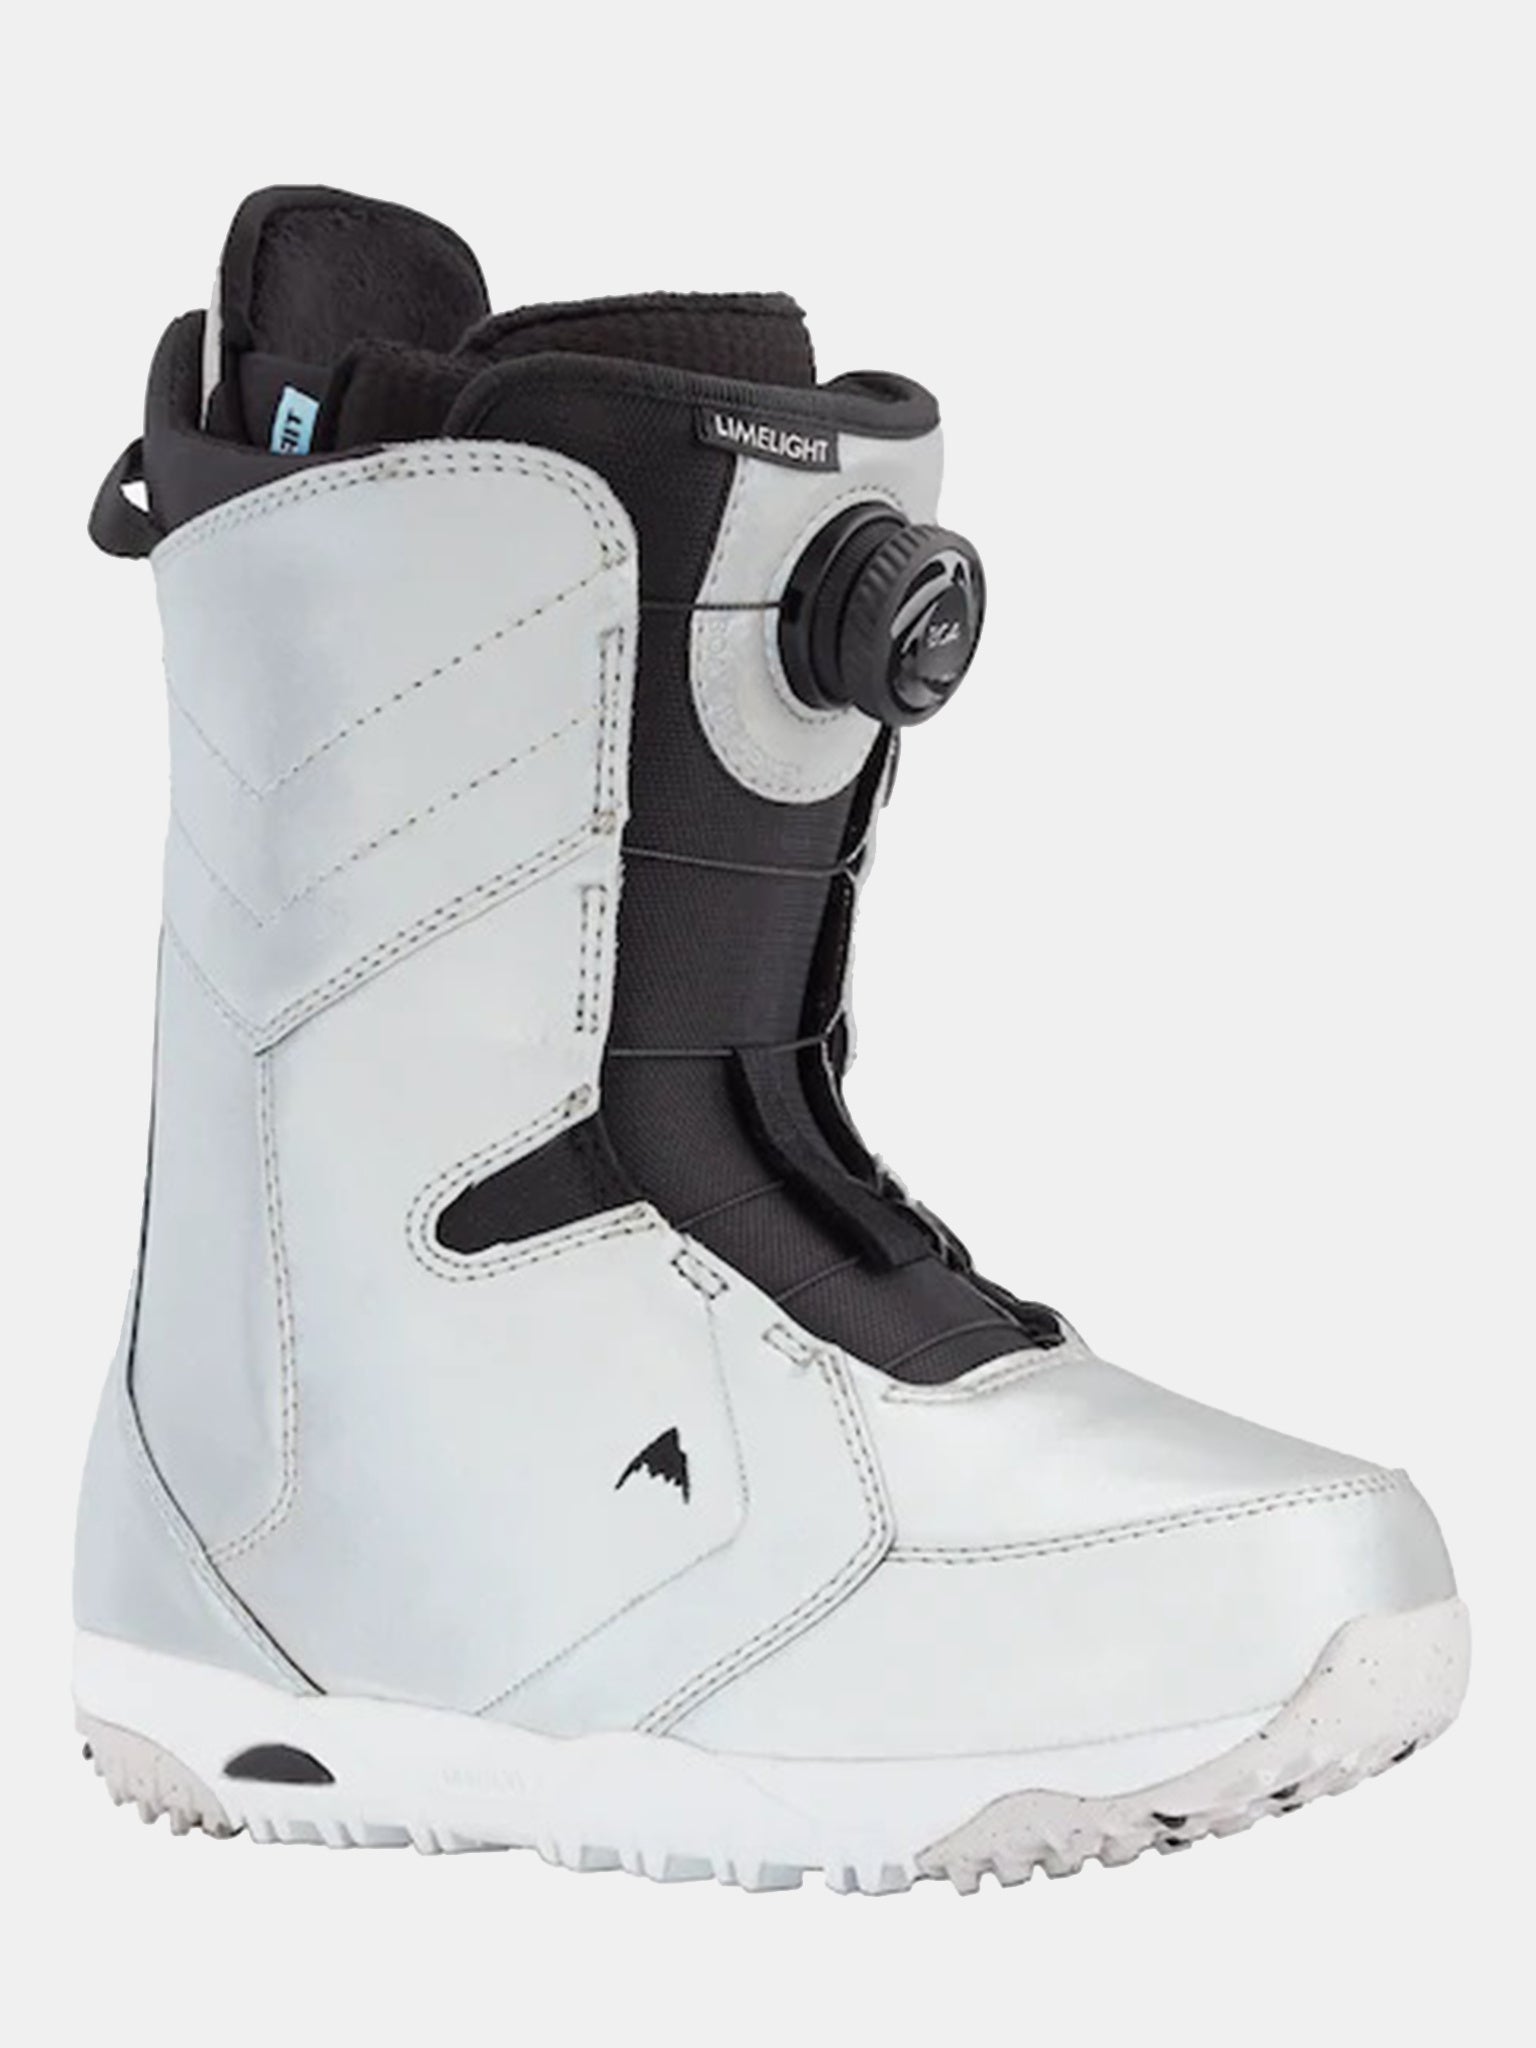 Burton Women's Boa Snowboard Boots 2021 - Bernard